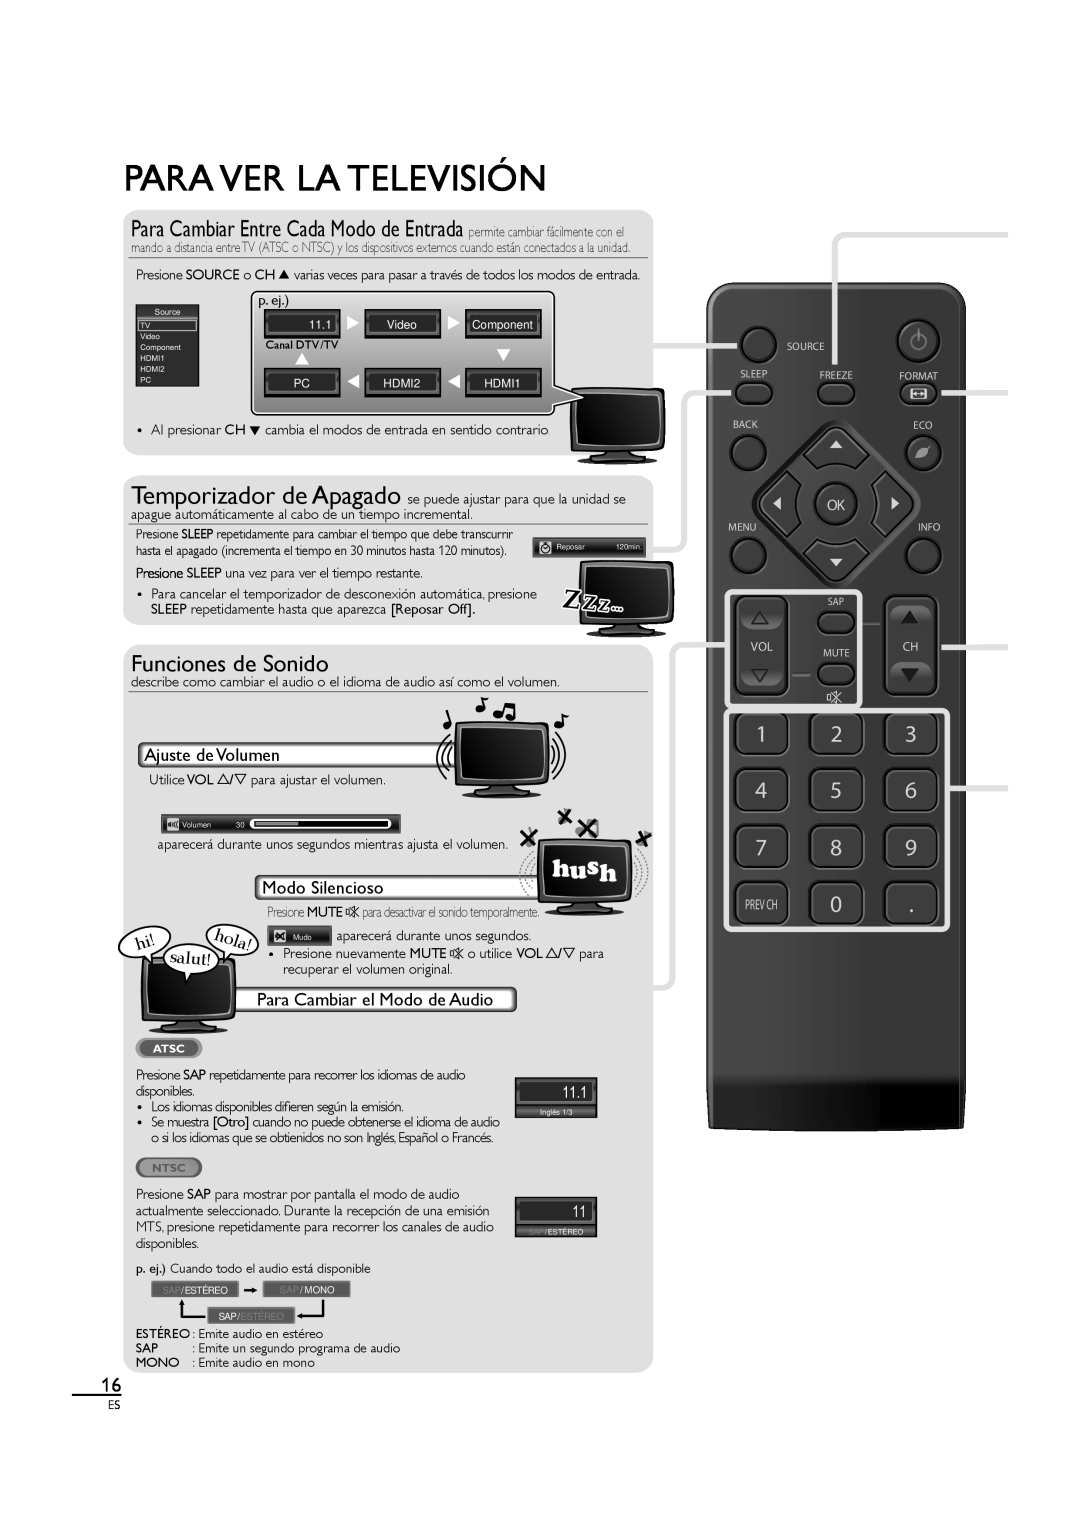 Sylvania LC190SL1 owner manual Para Ver La Televisión, Funciones de Sonido, 1 2 4 5 7 8, hola, 11.1, Video 